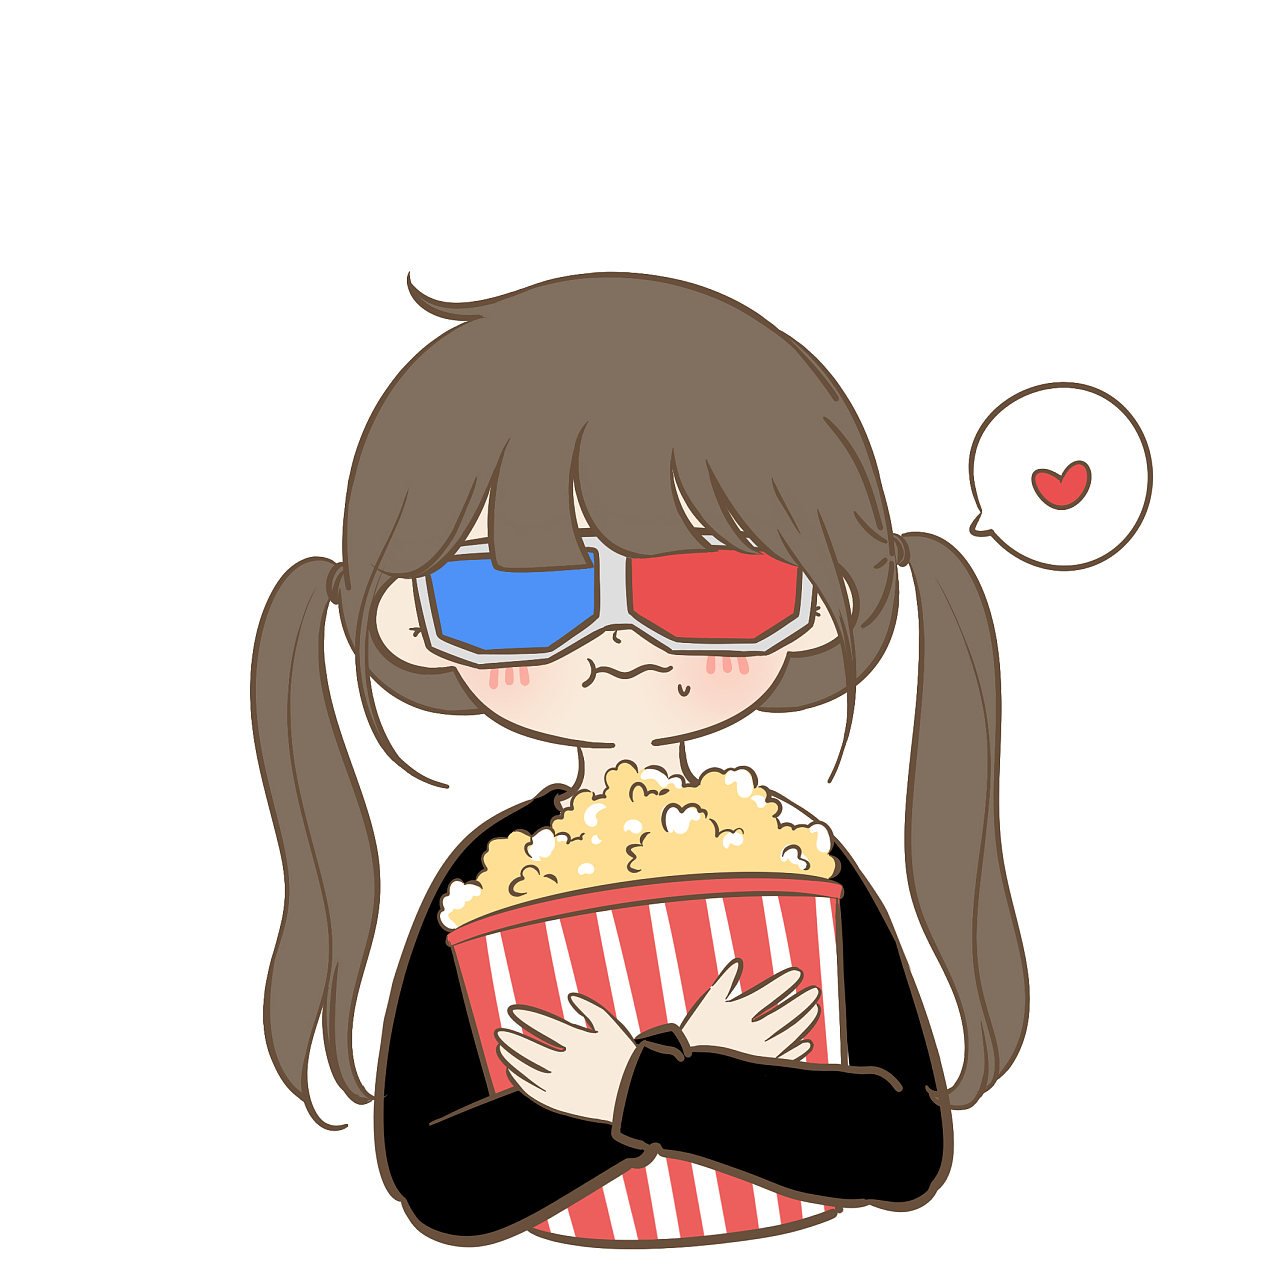 一起去看电影吧